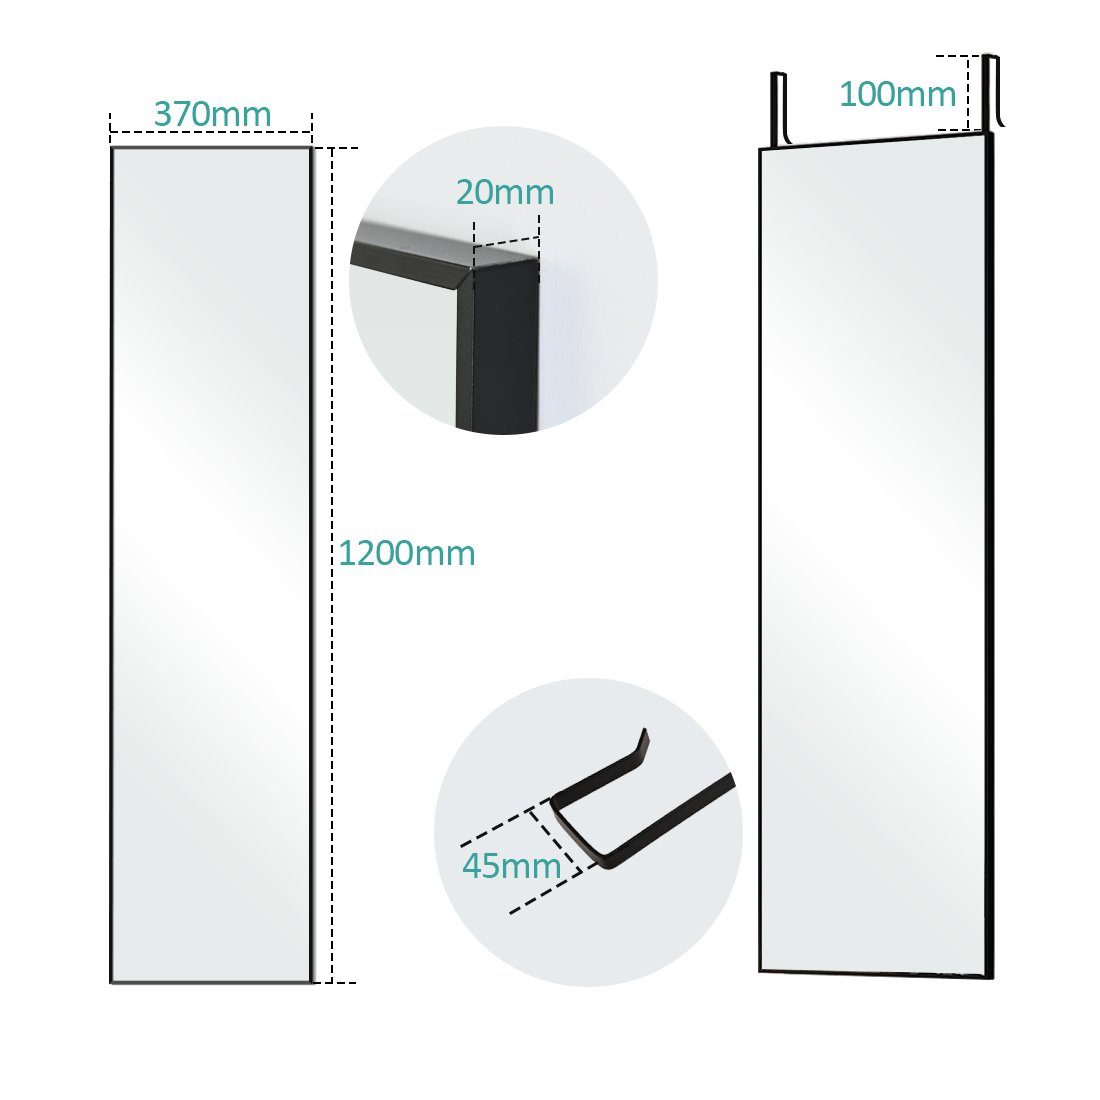 EMKE die 120x37cm an mit EMKE Anlehnen Wand Ganzkörperspiegel Aufhängen Haken, Spiegel MetallRahmen zum Großer Wandspiegel oder mit Schwarz